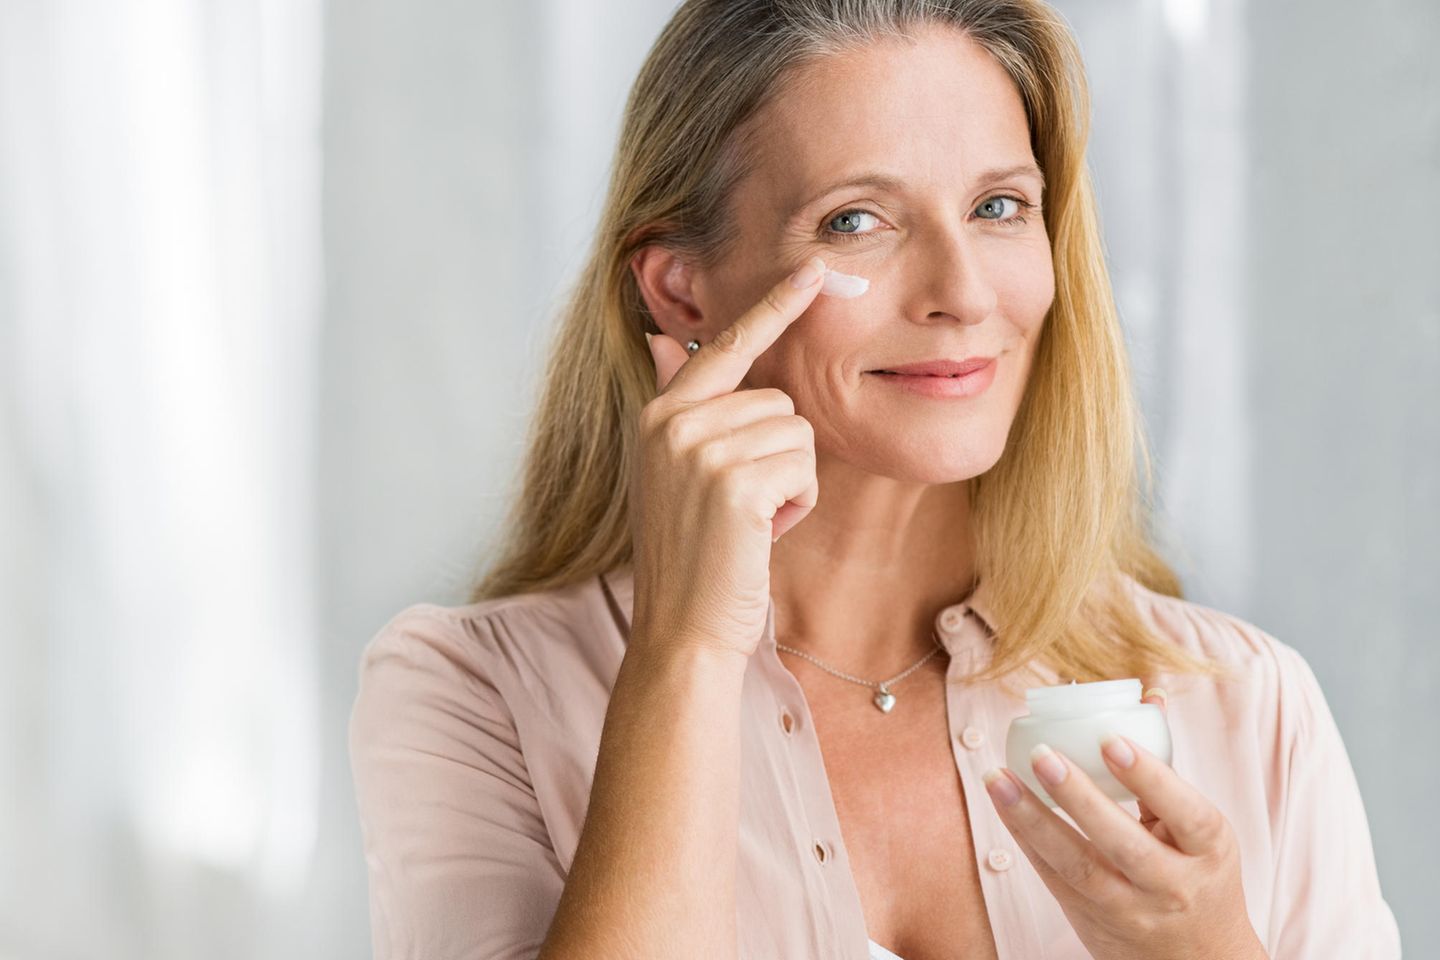 BioChange Anti-Ageing testápolás – MBR Cosmetics